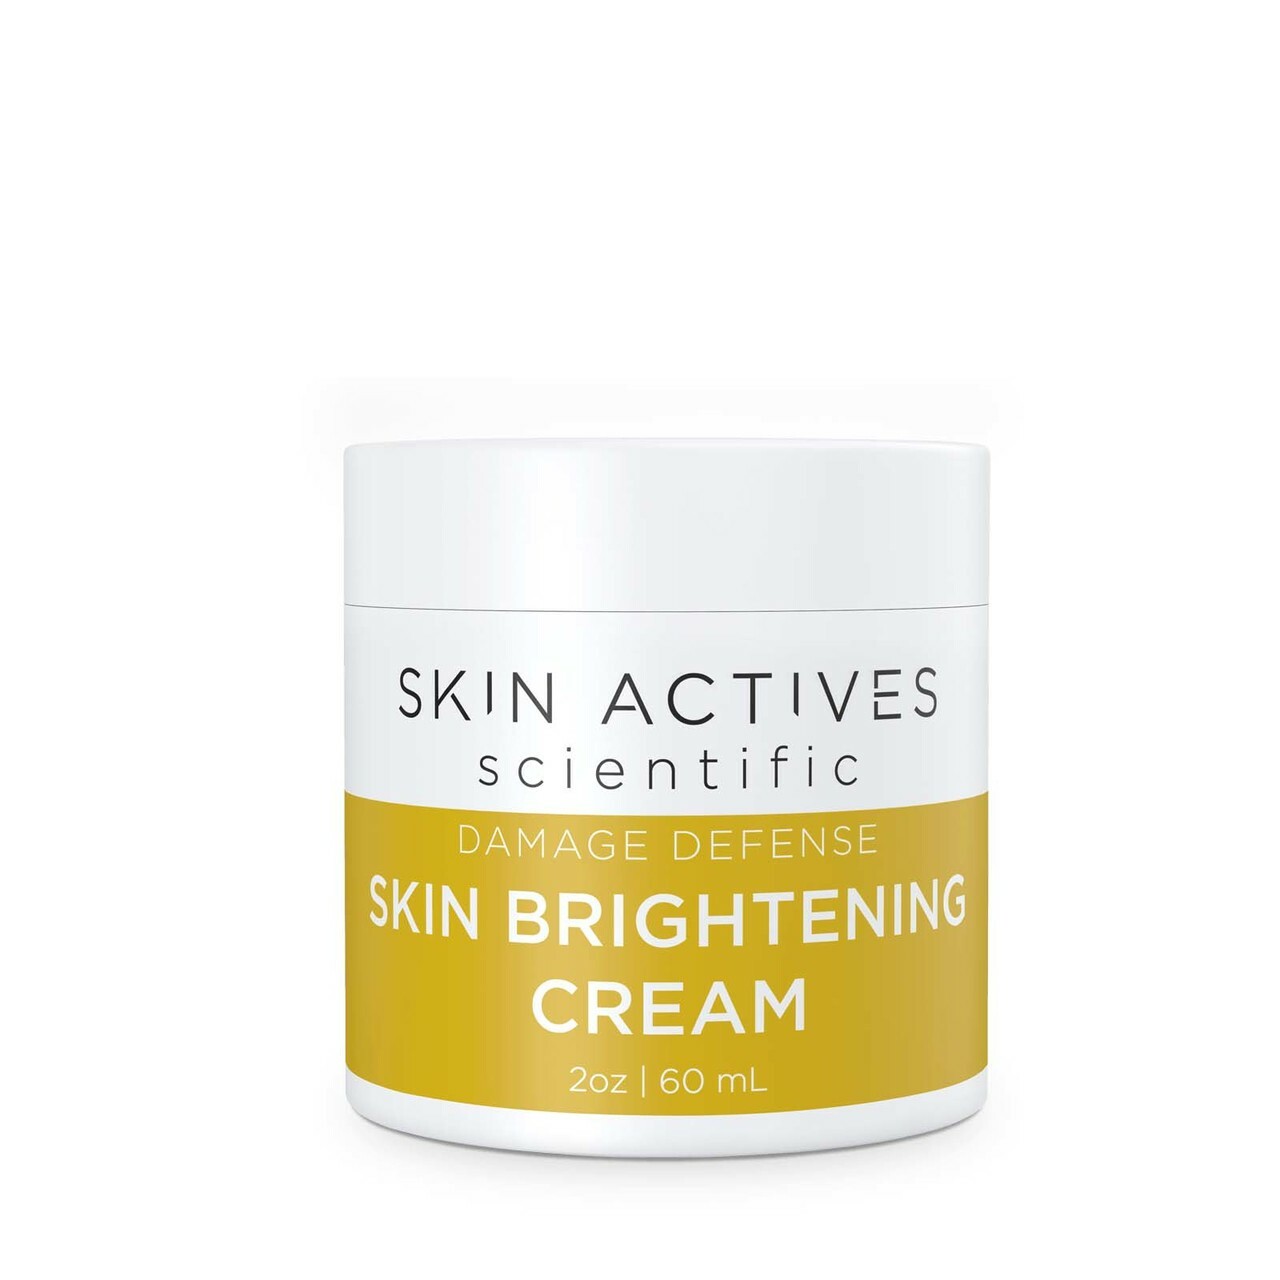 Skin Brightening Cream - Pigmentation - Skin Actives - 2.0 oz.